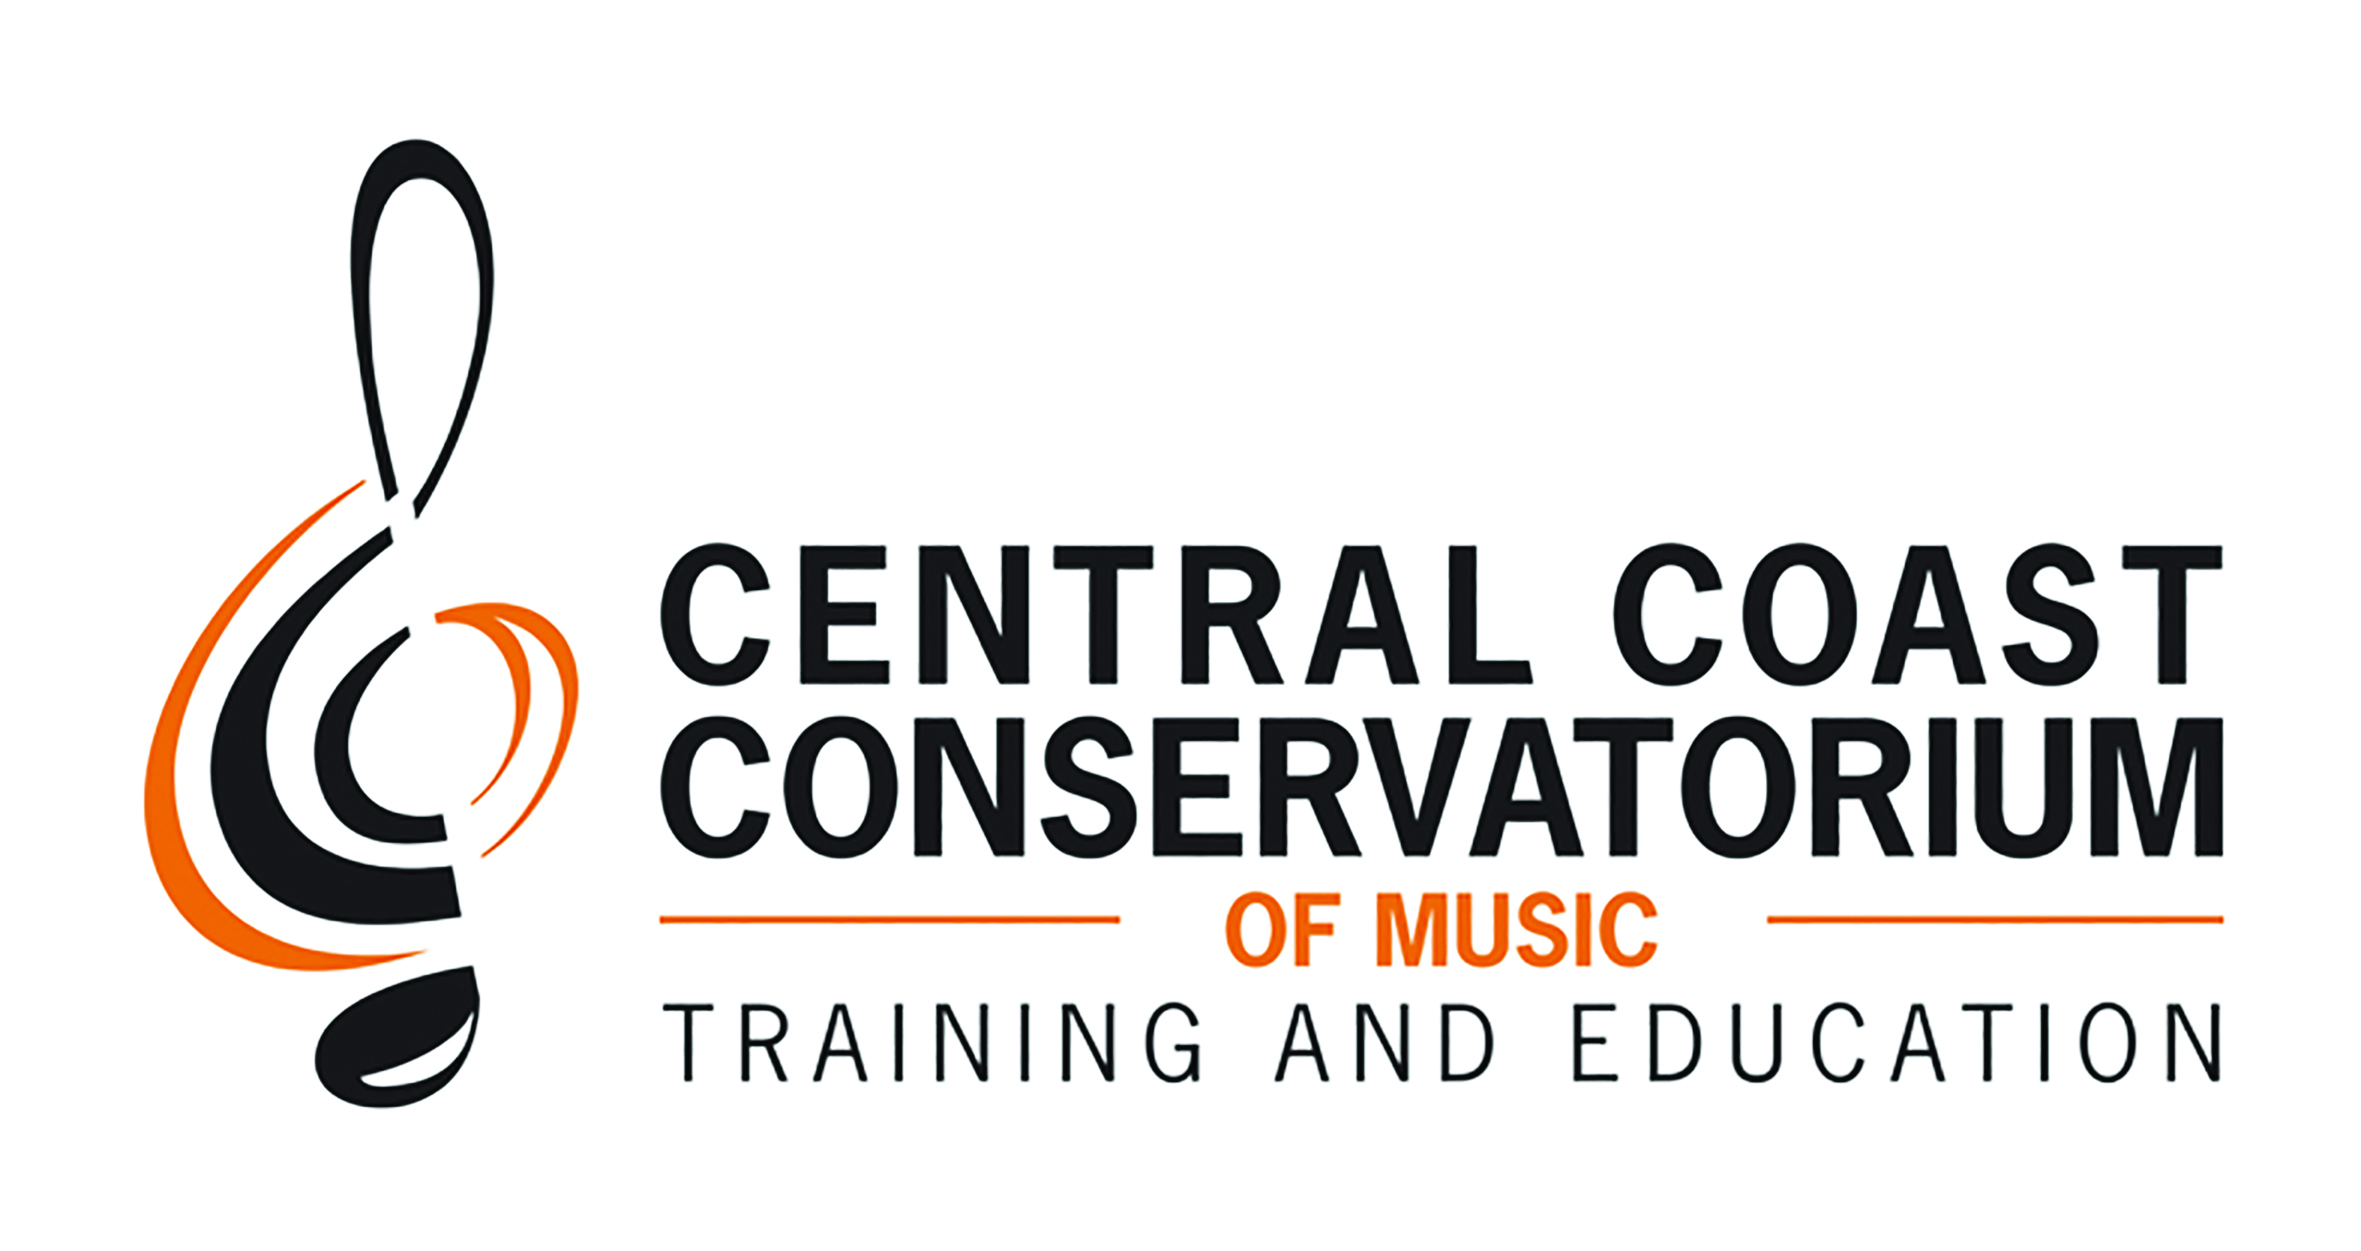 Central Coast Conservatorium